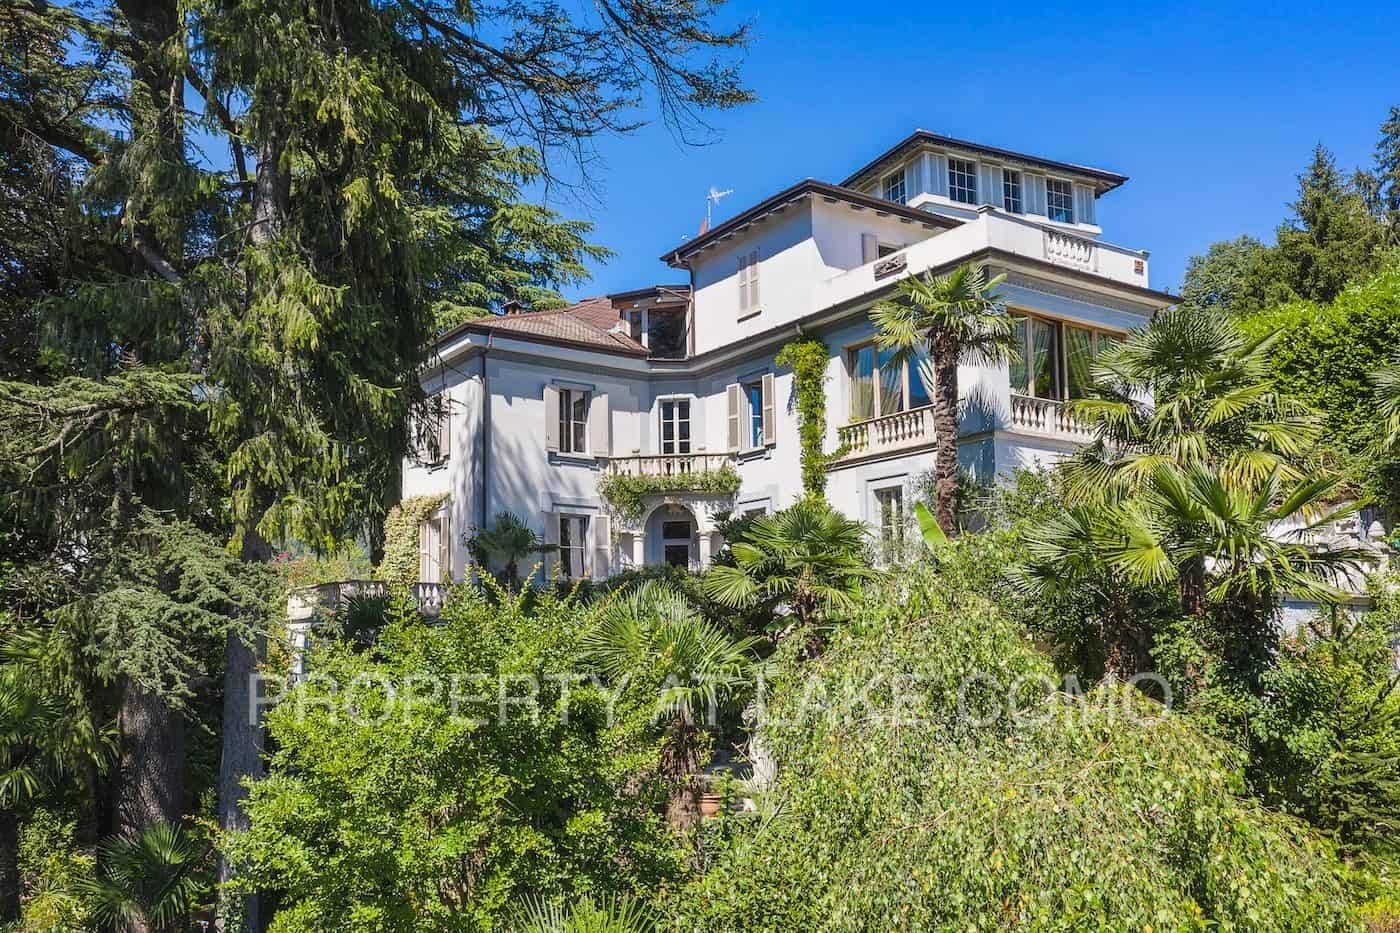 Immagini Villa Gina: Magnifica Residenza Storica sul Lago di Como